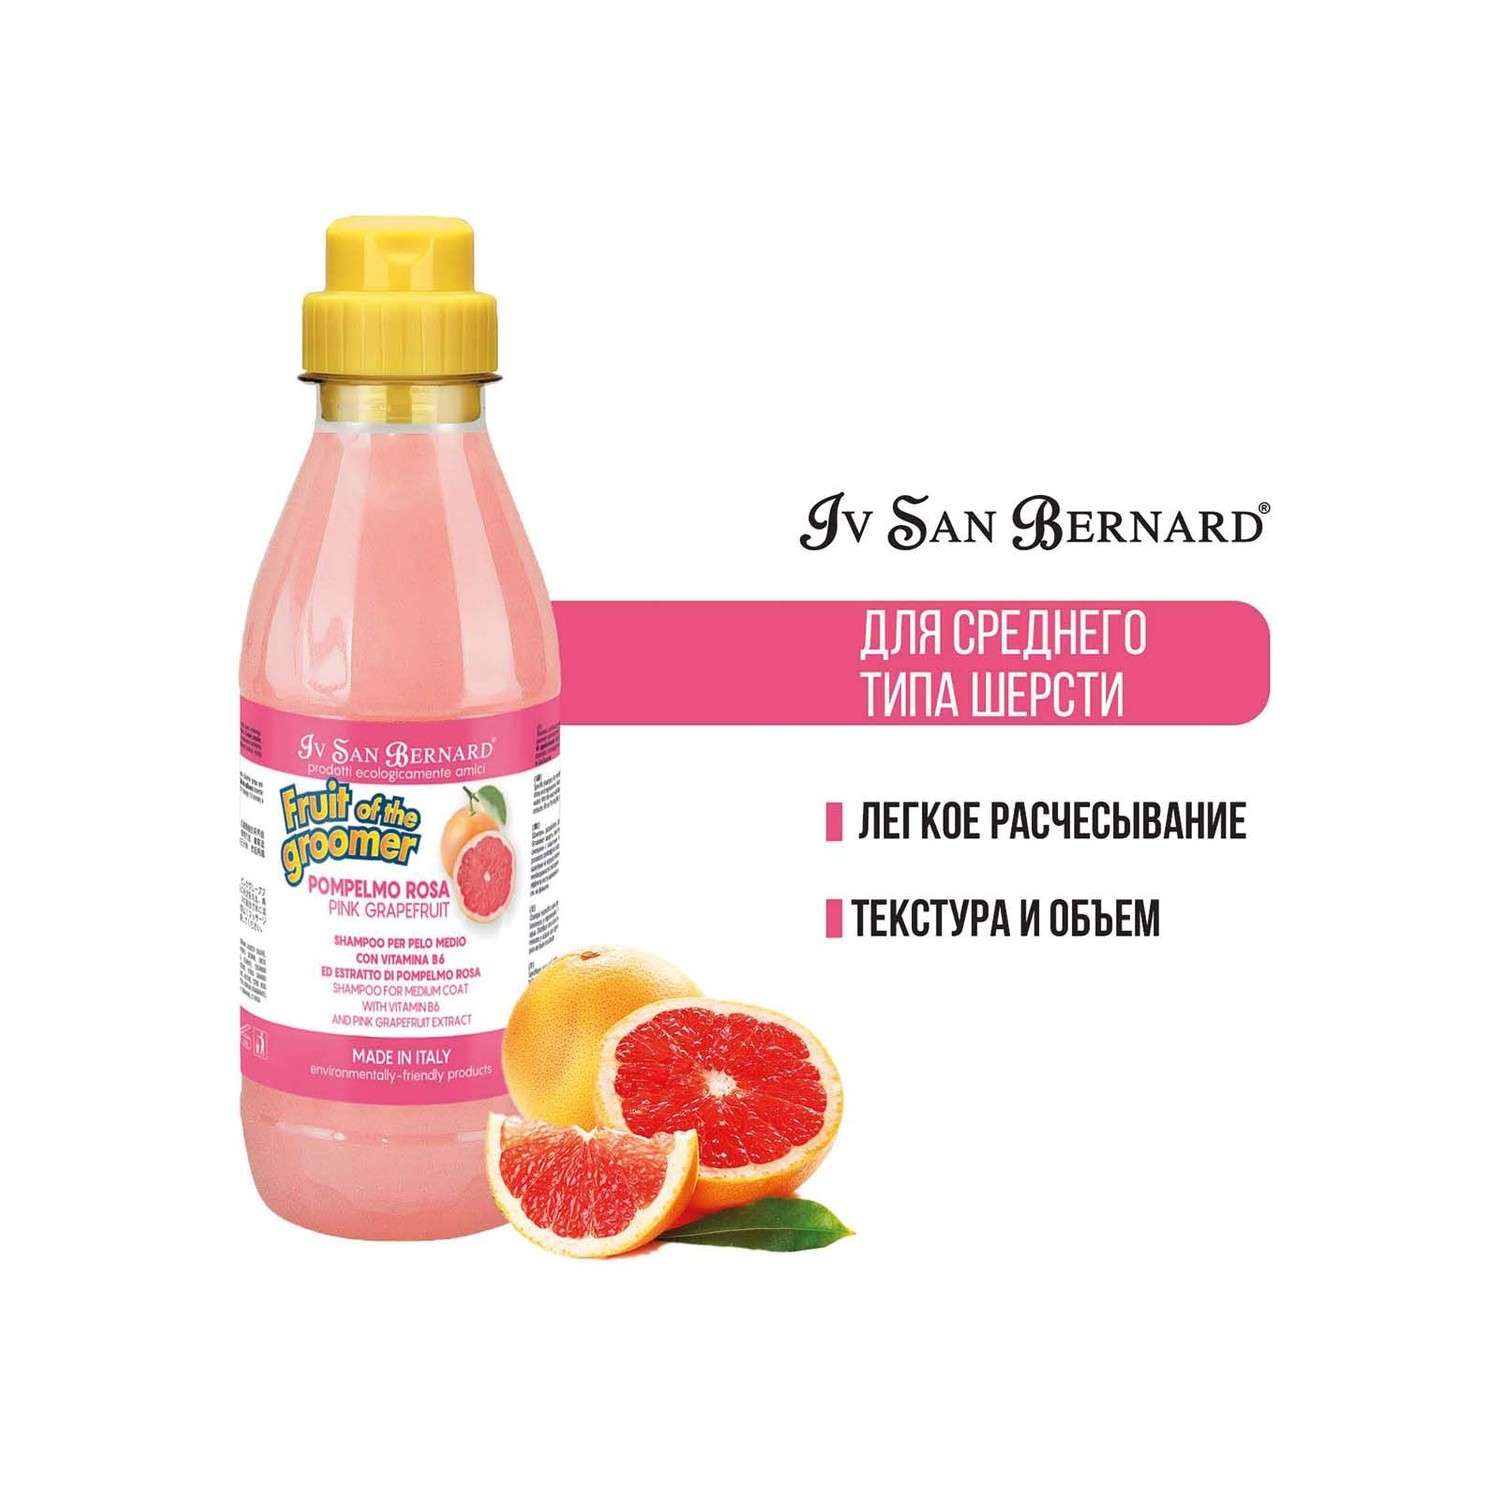 Шампунь для кошек и собак Iv San Bernard Fruit of the Groomer Pink Grapefruit для шерсти средней длины с витаминами 500мл - фото 2